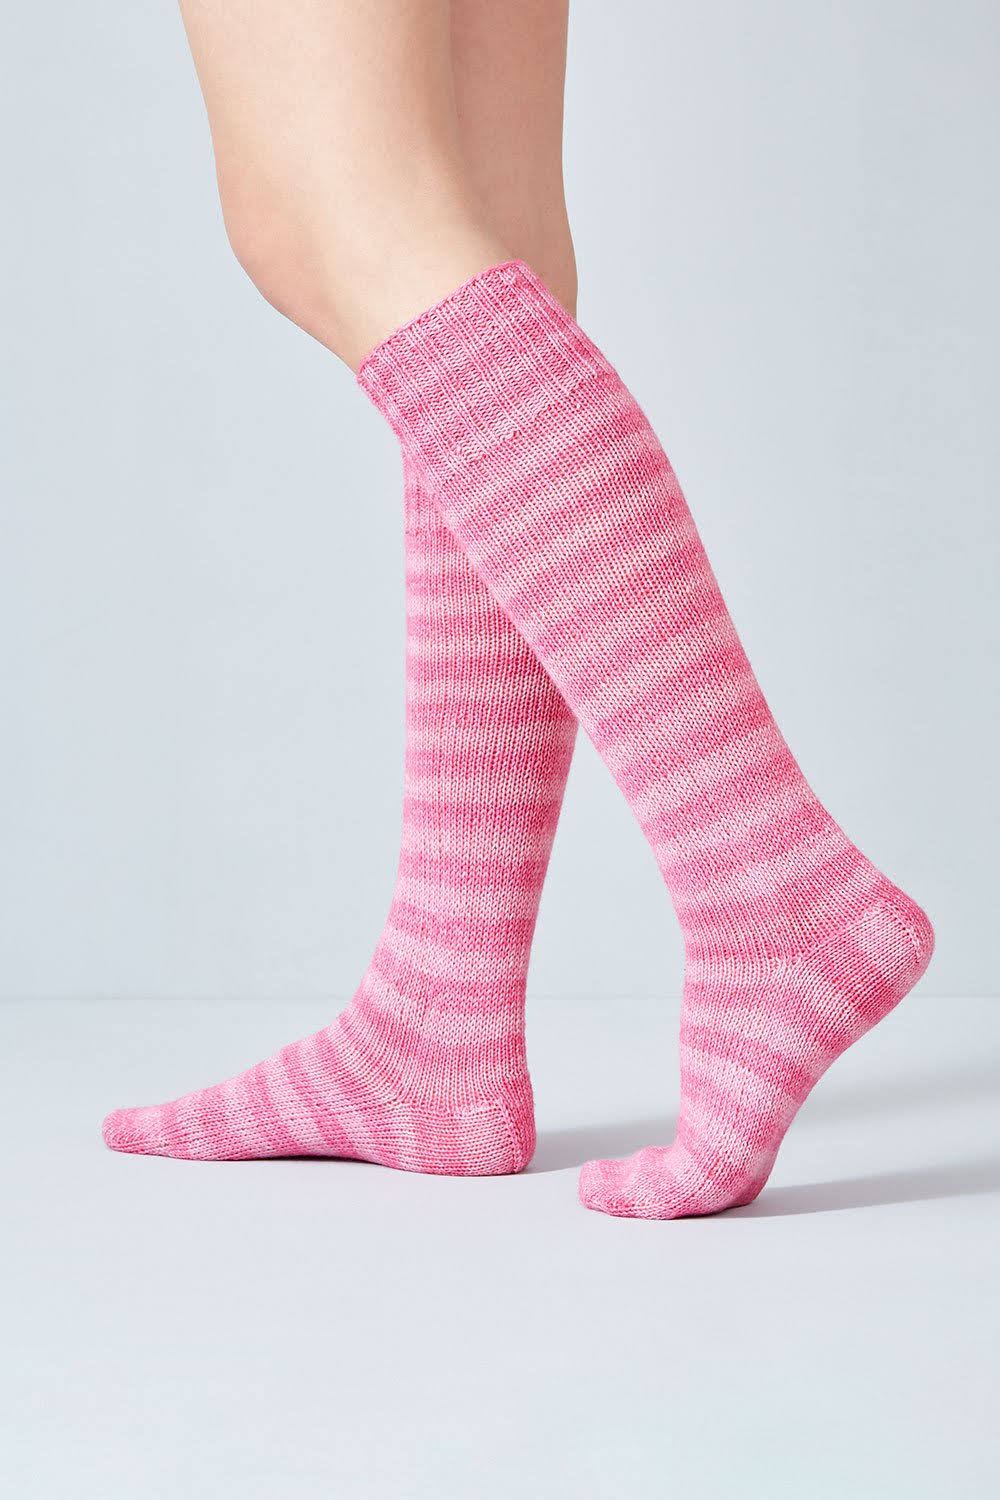 Pink - Urth Yarns Uneek Sock Yarn - 2 x 50g Balls